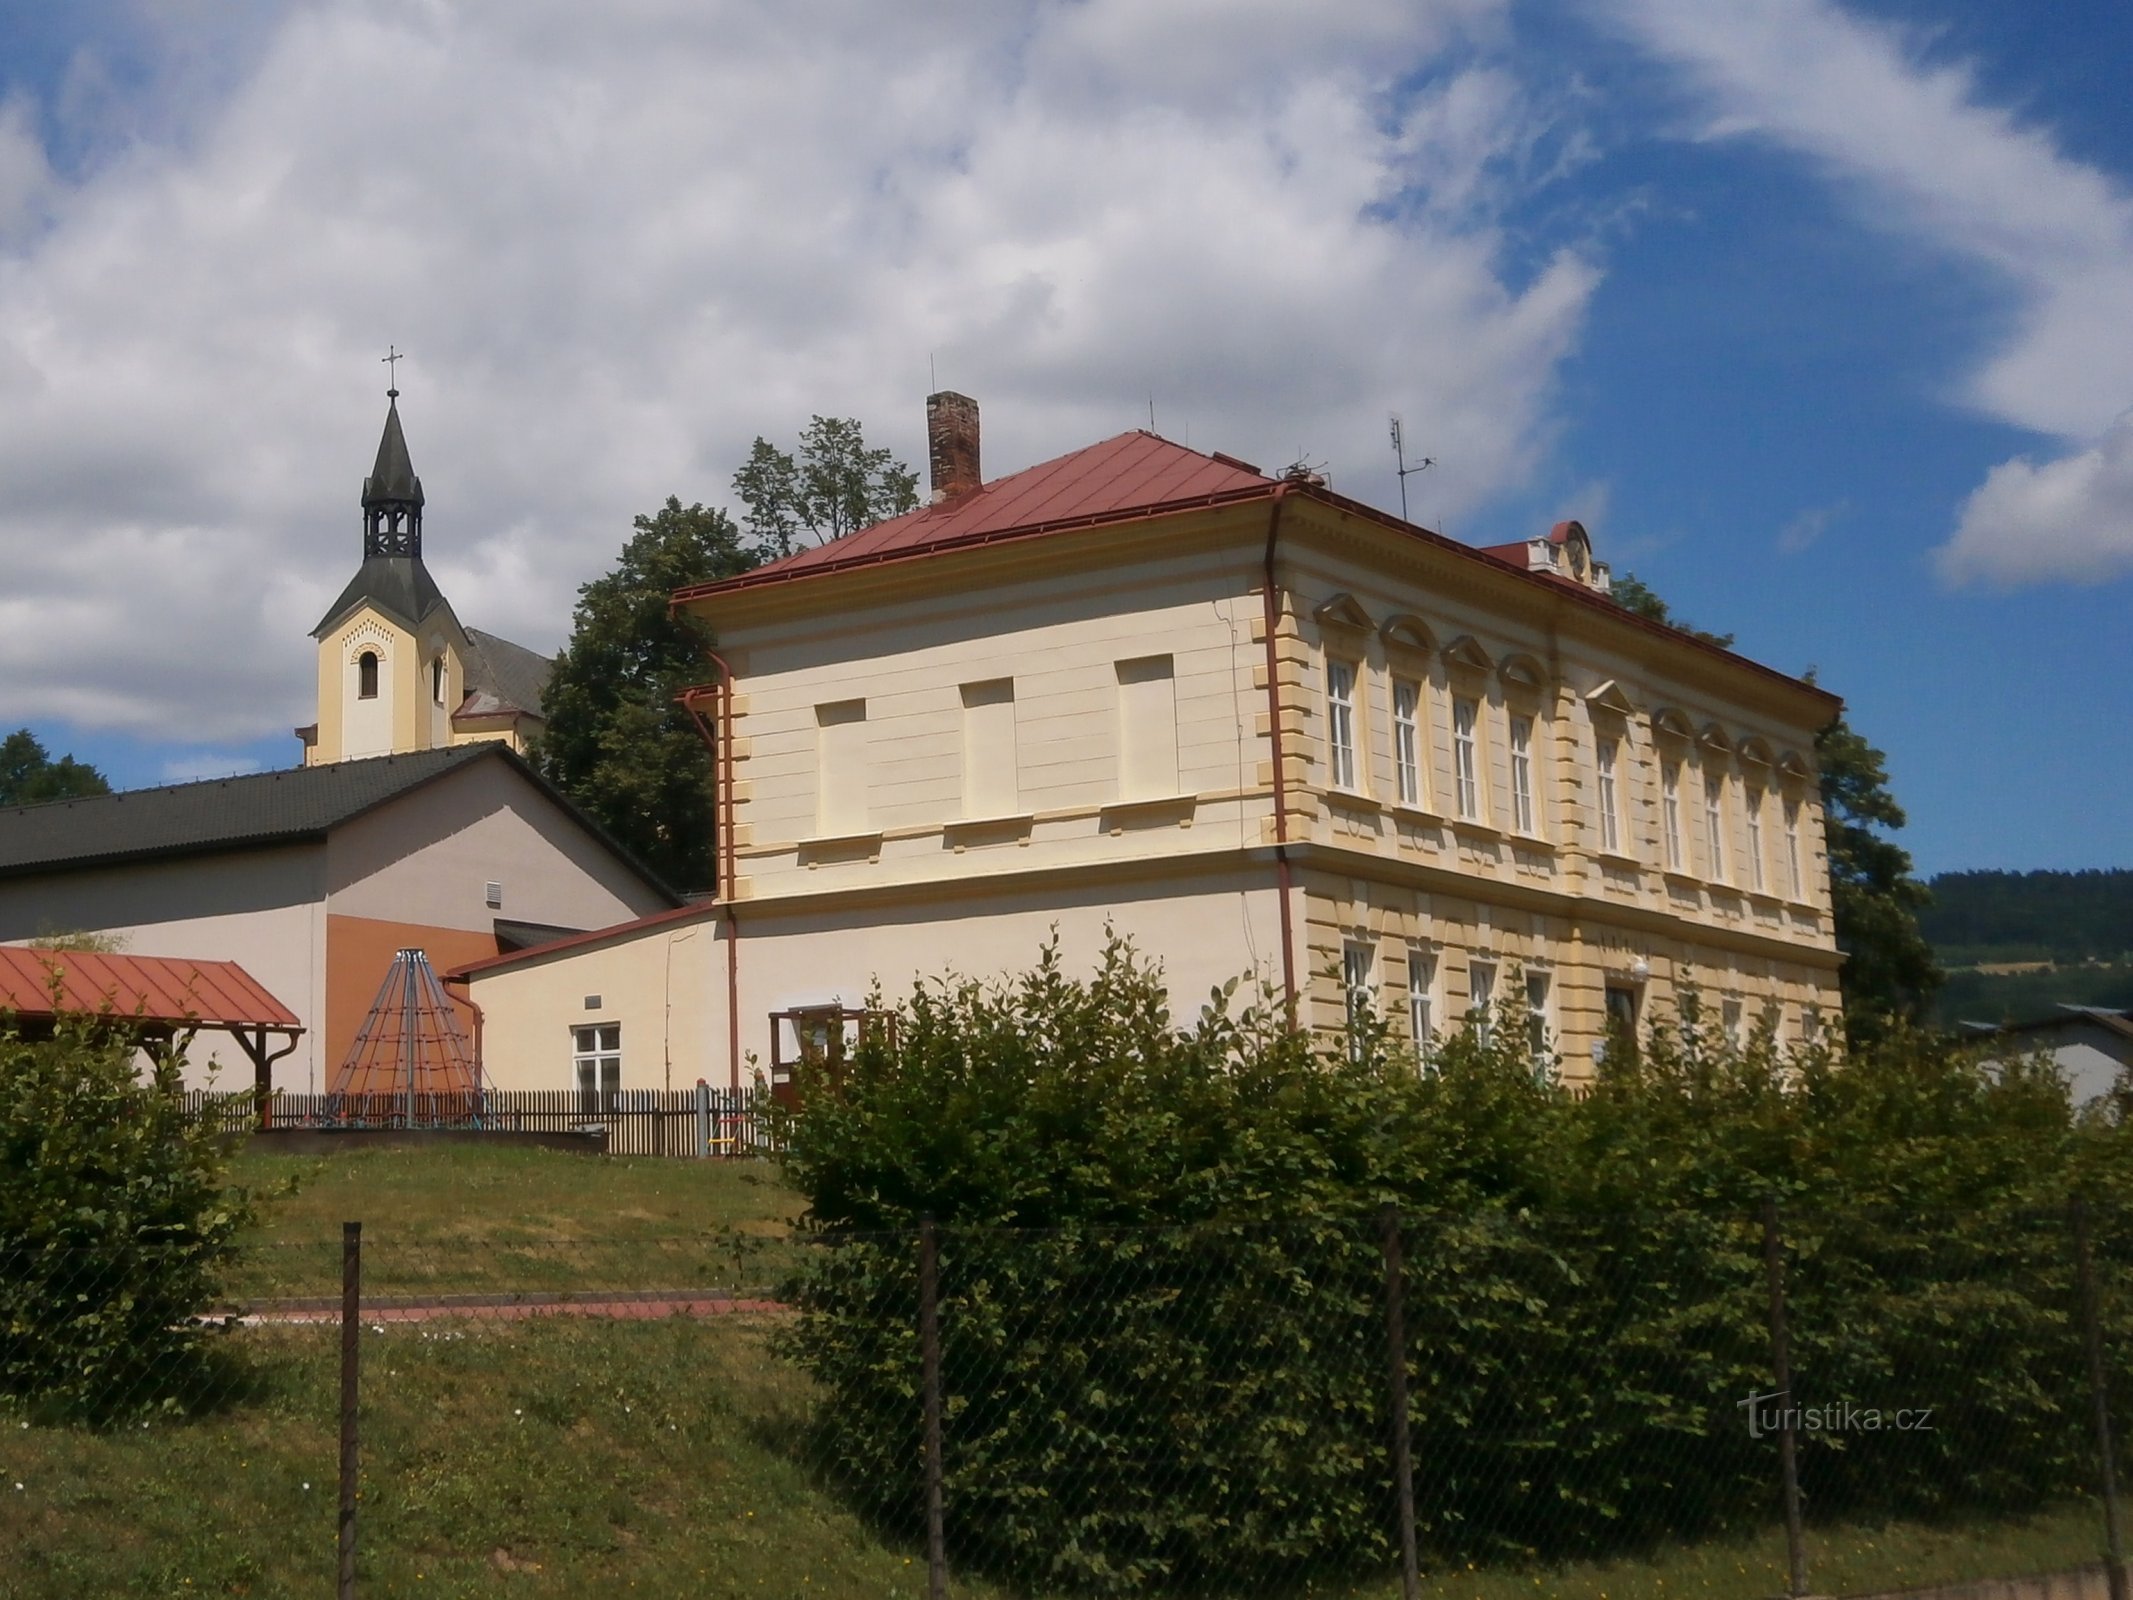 Szkoła z kościołem w tle (Batňovice, 3.7.2017 lipca XNUMX)